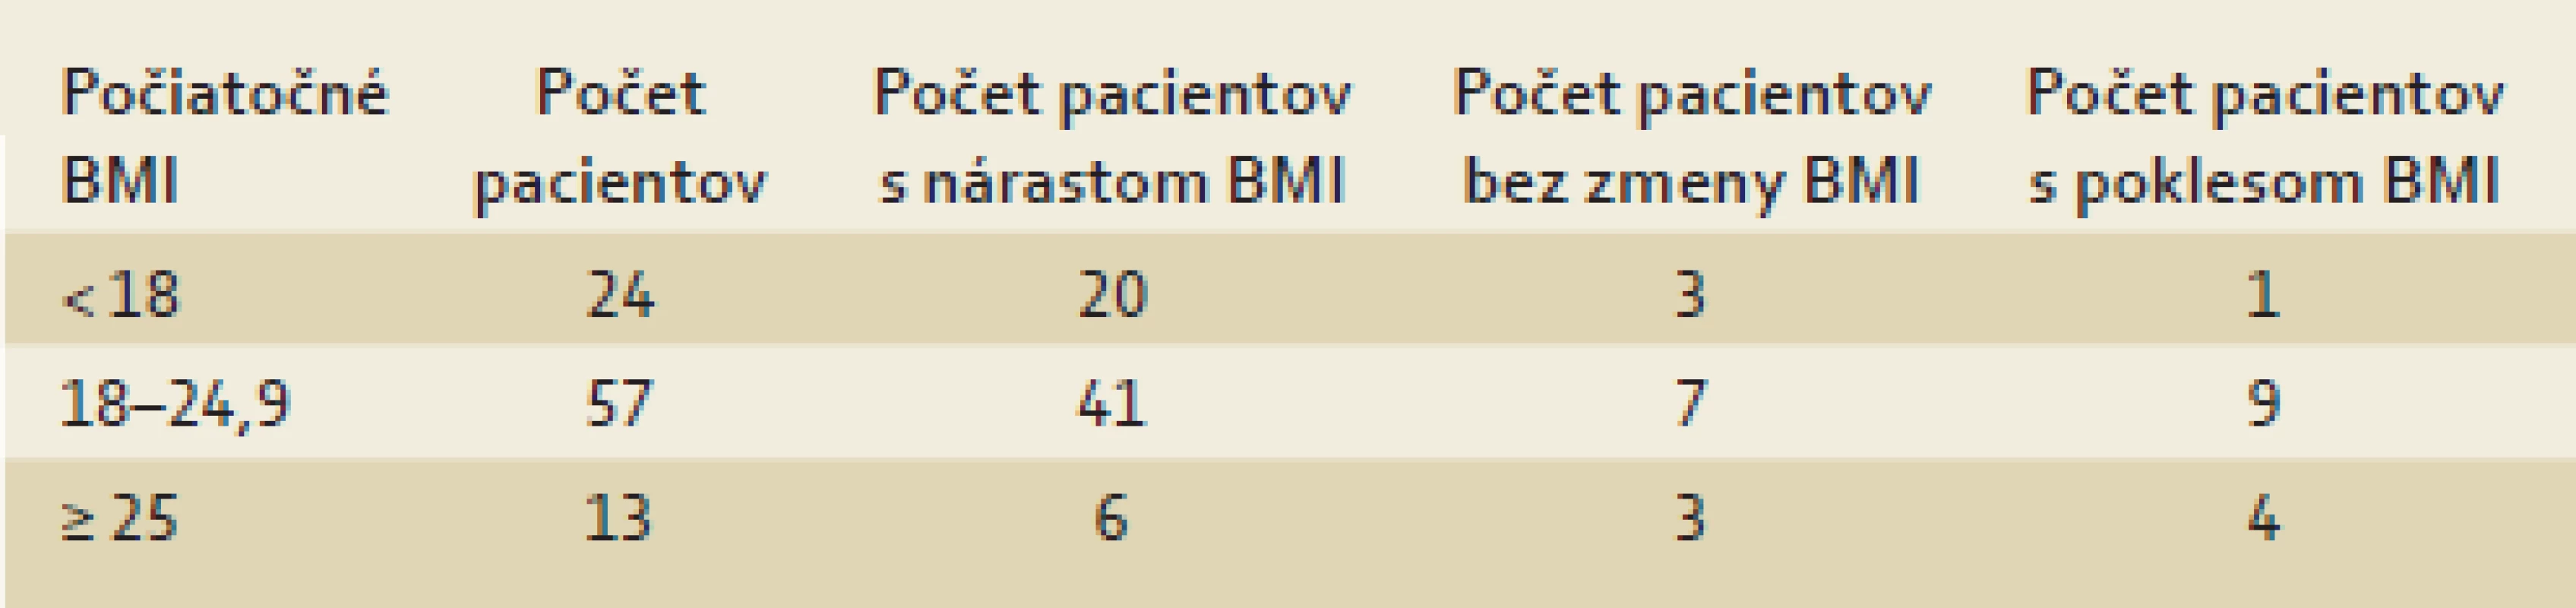 Porovnanie zmeny hmotnosti skupín pacientov rozdelených podľa BMI.
Tab. 3. Comparison of the weight change of groups of patients divided according to BMI.